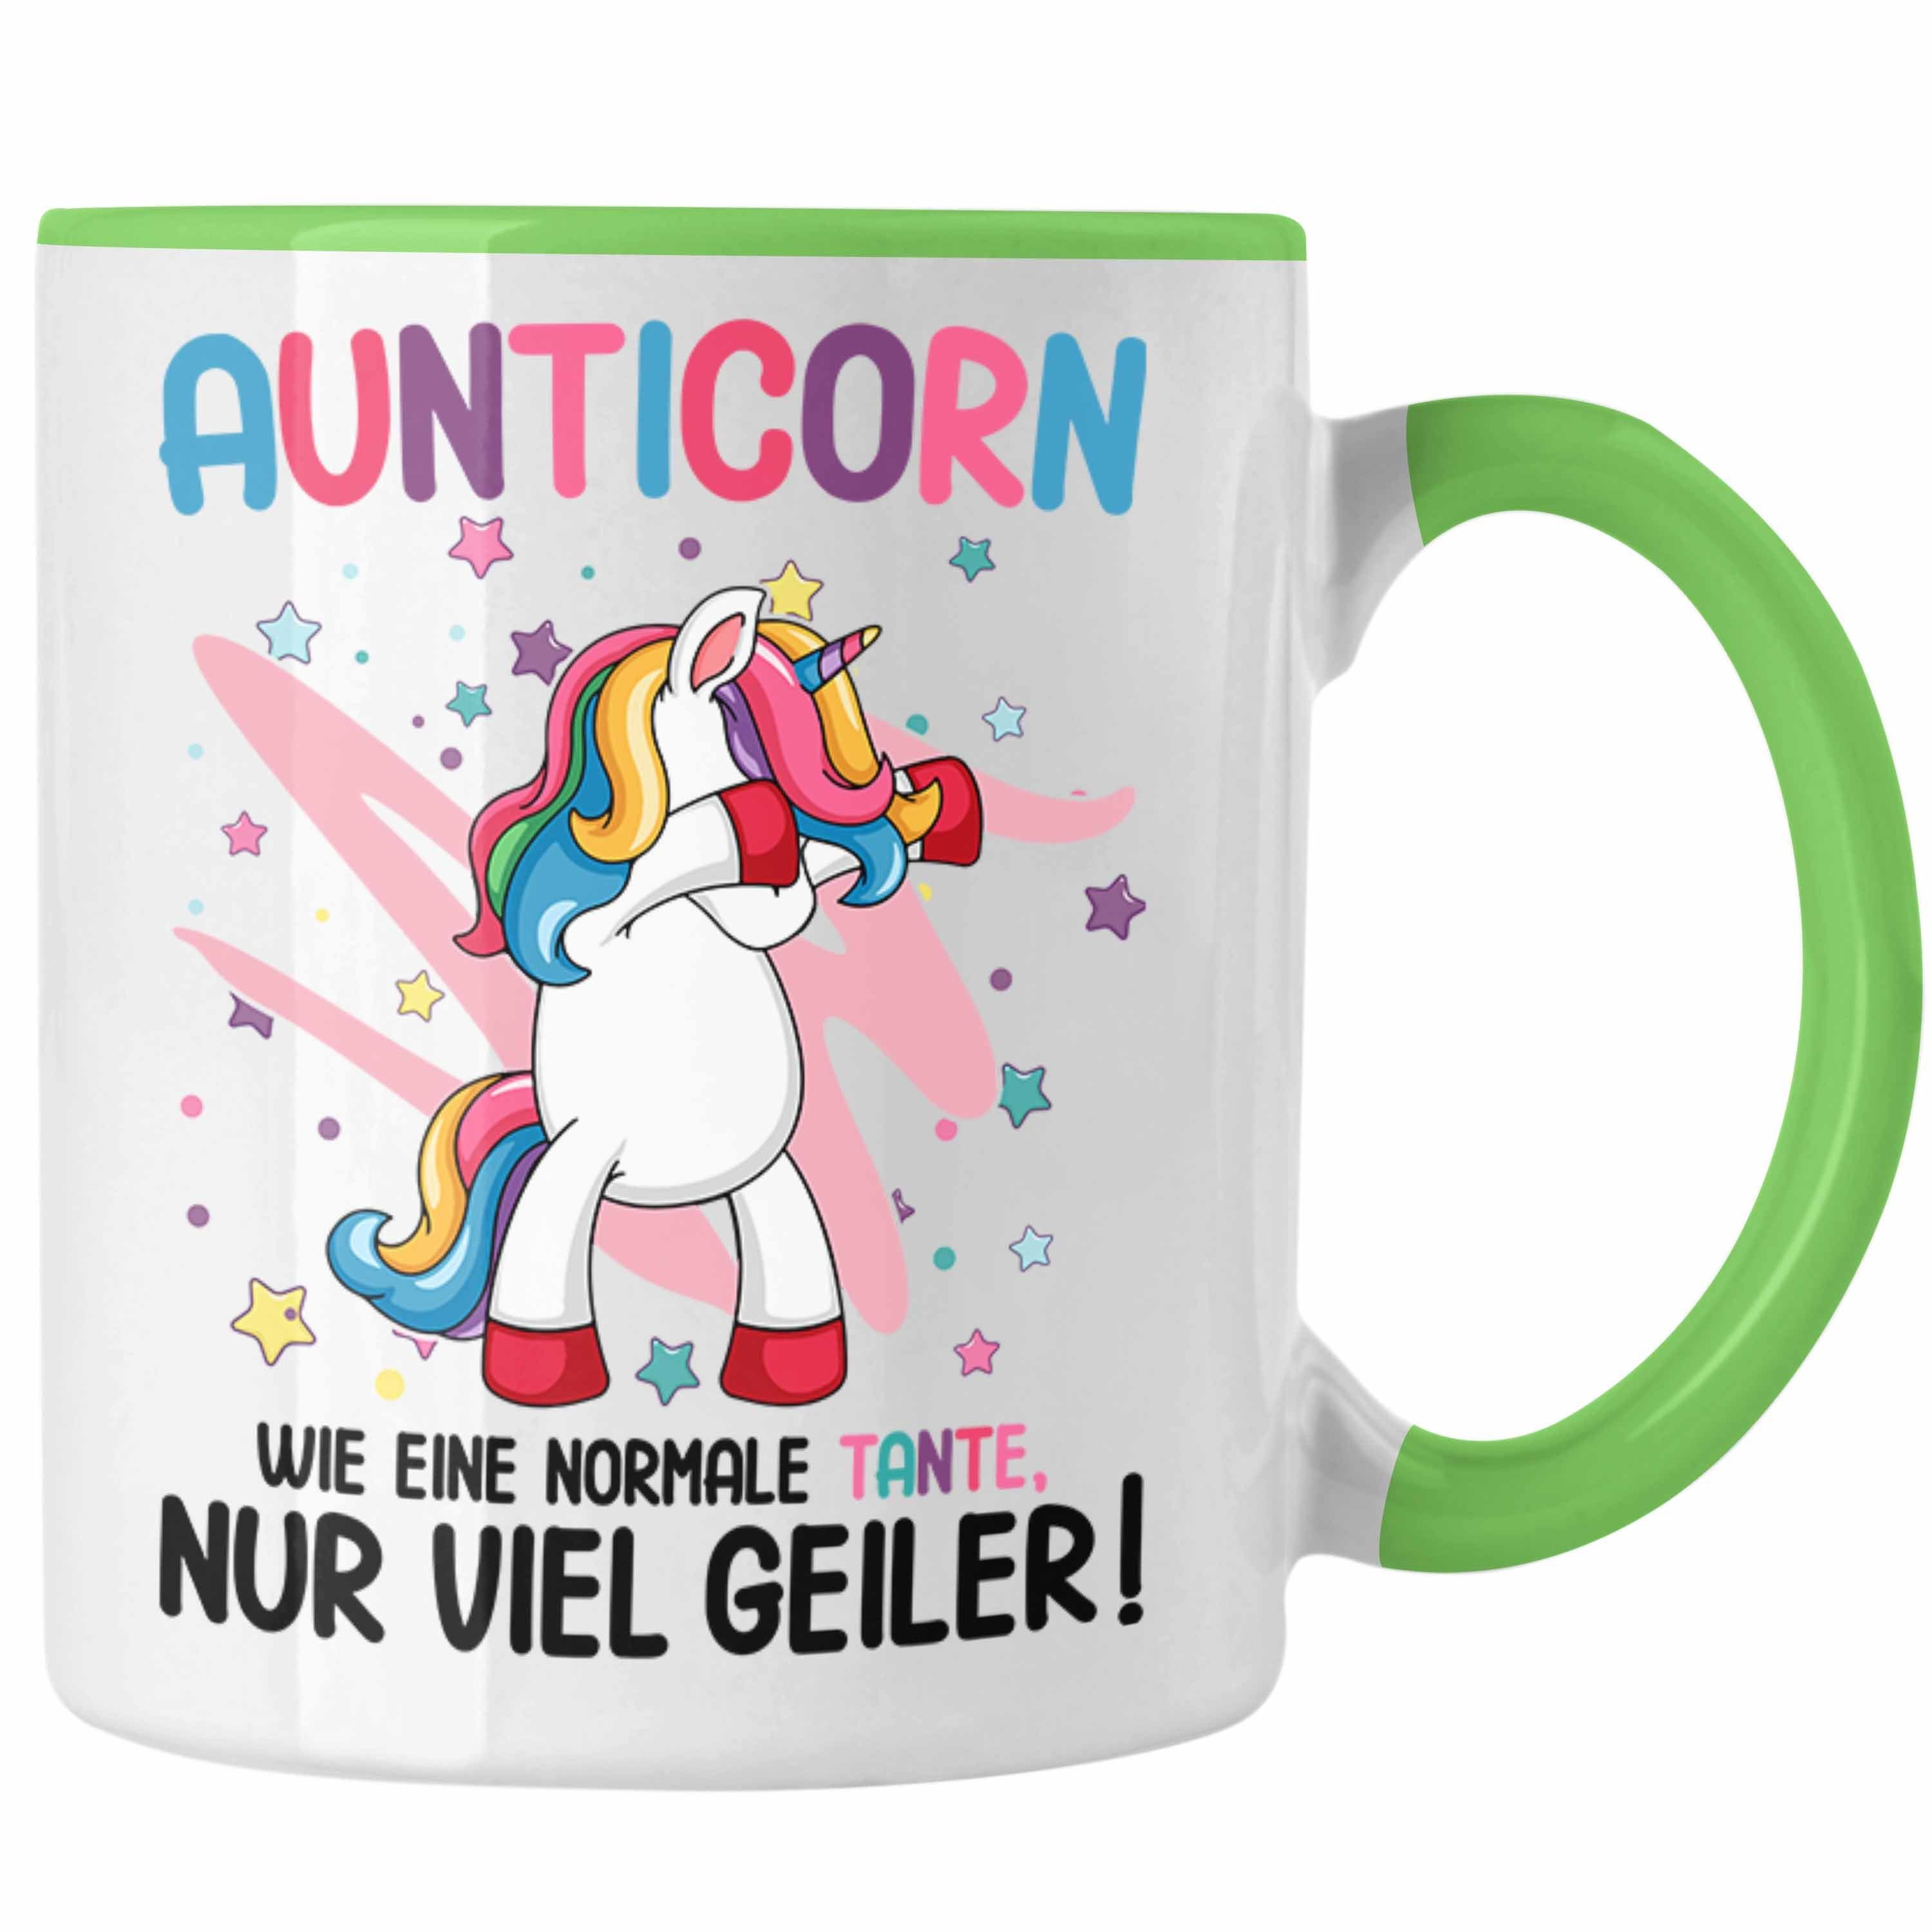 Trendation Tasse Trendation - Beste Tante Geschenk Lustig Spruch Aunticorn Wie Eine Normale Tante Einhorn Geburtstag Grün